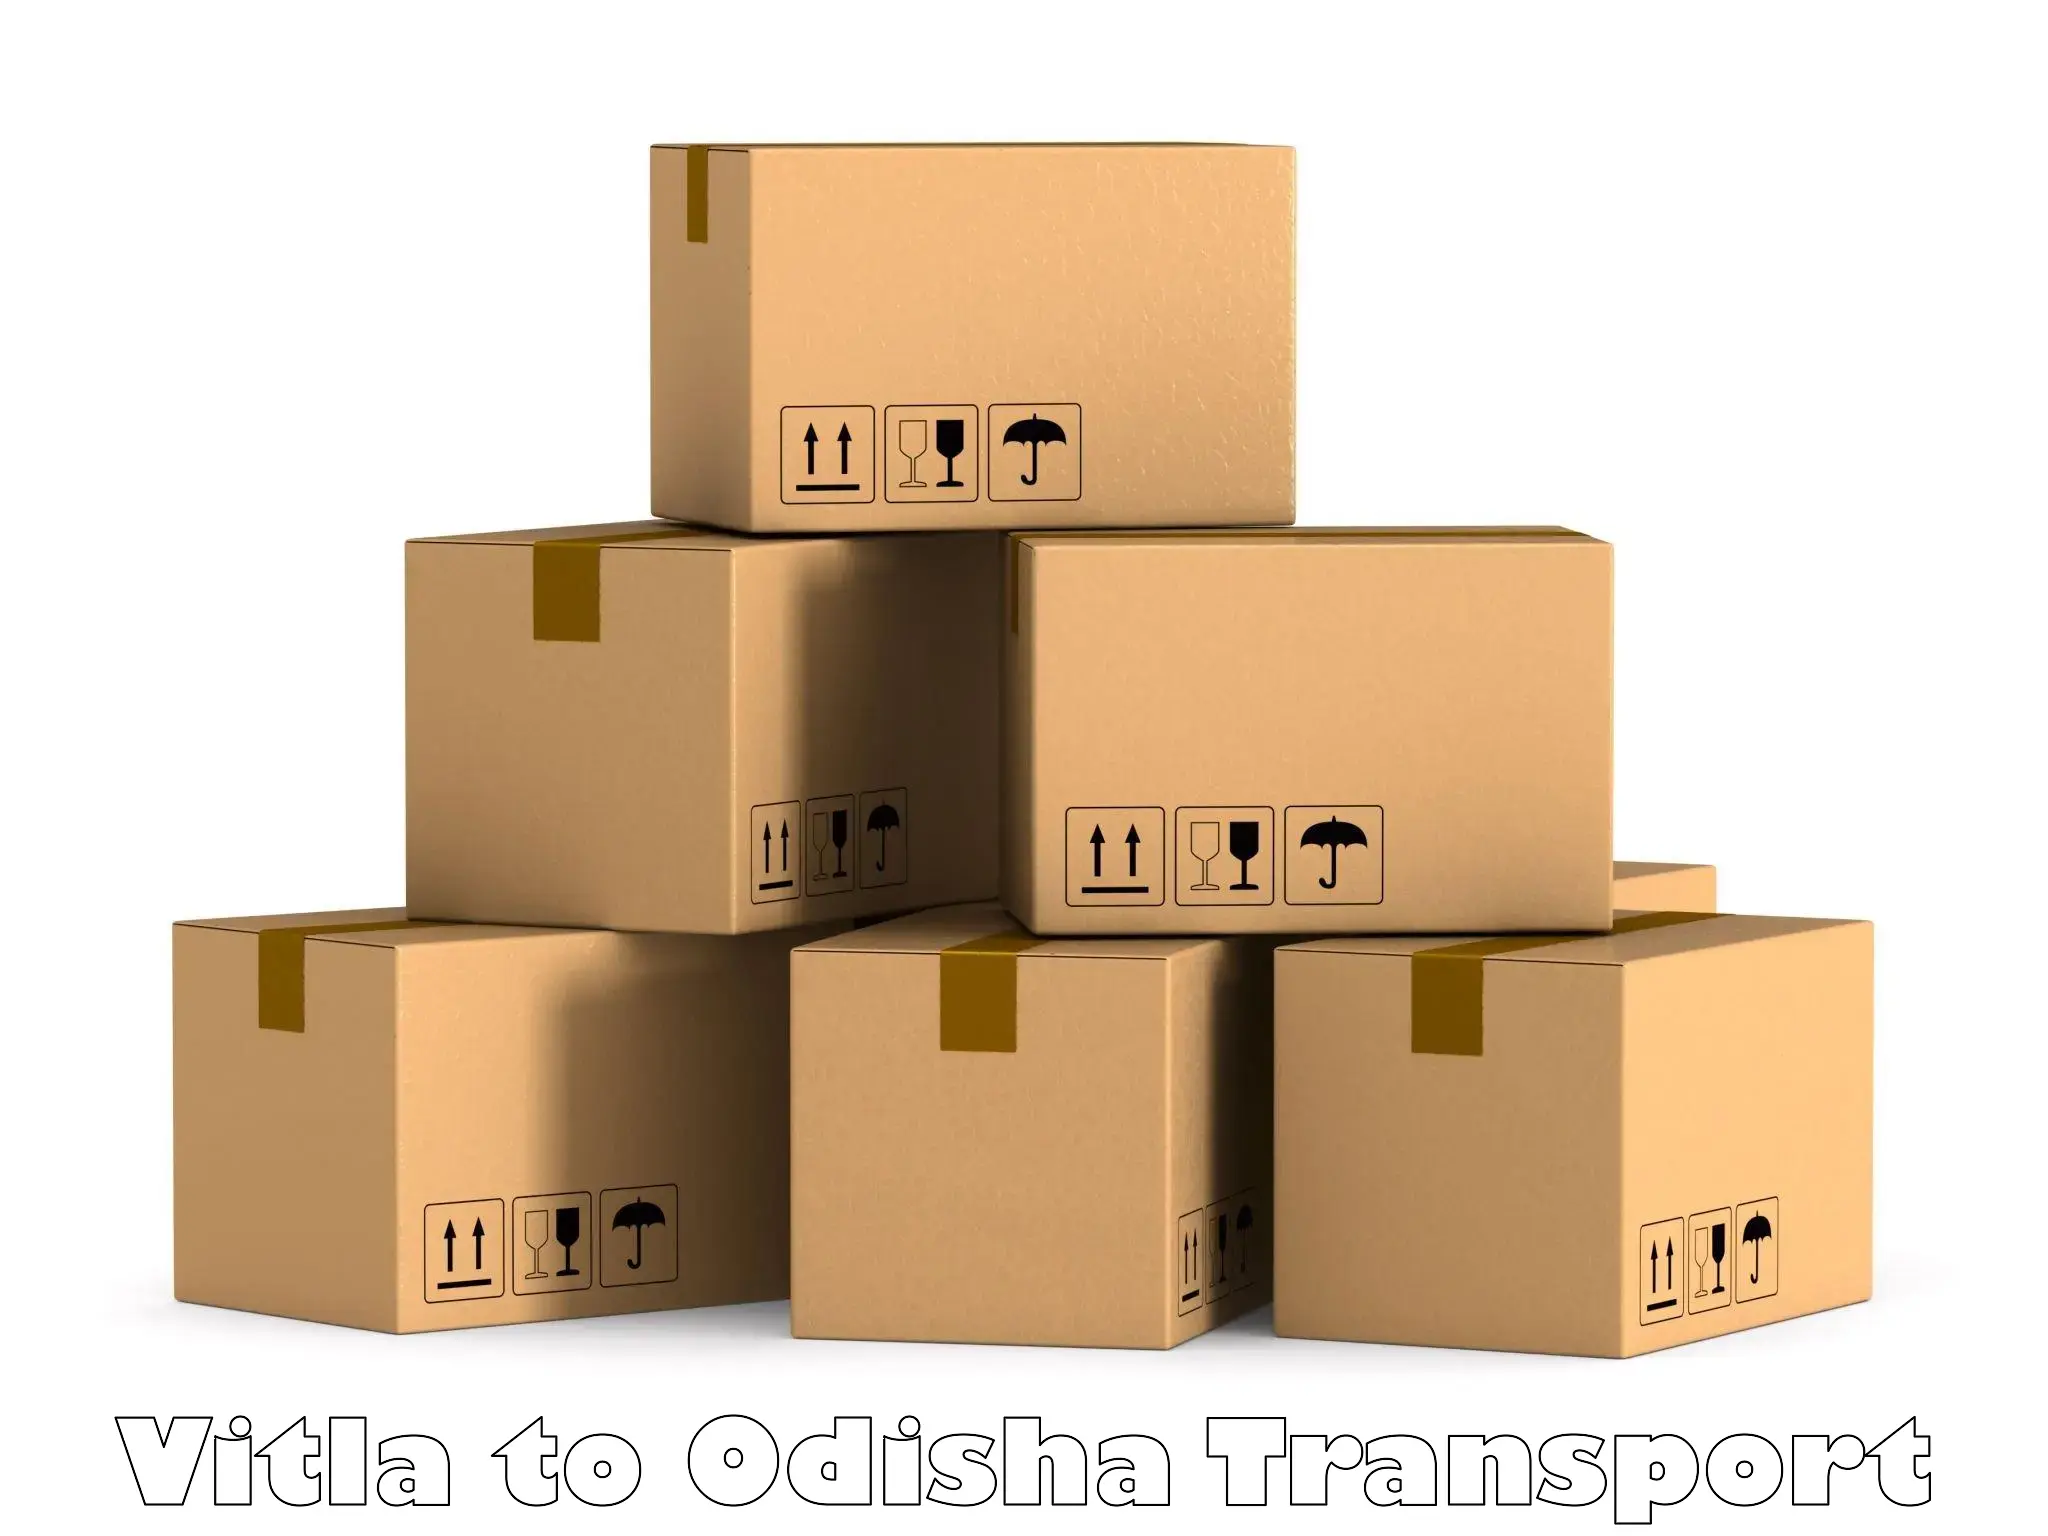 Delivery service Vitla to Chatrapur